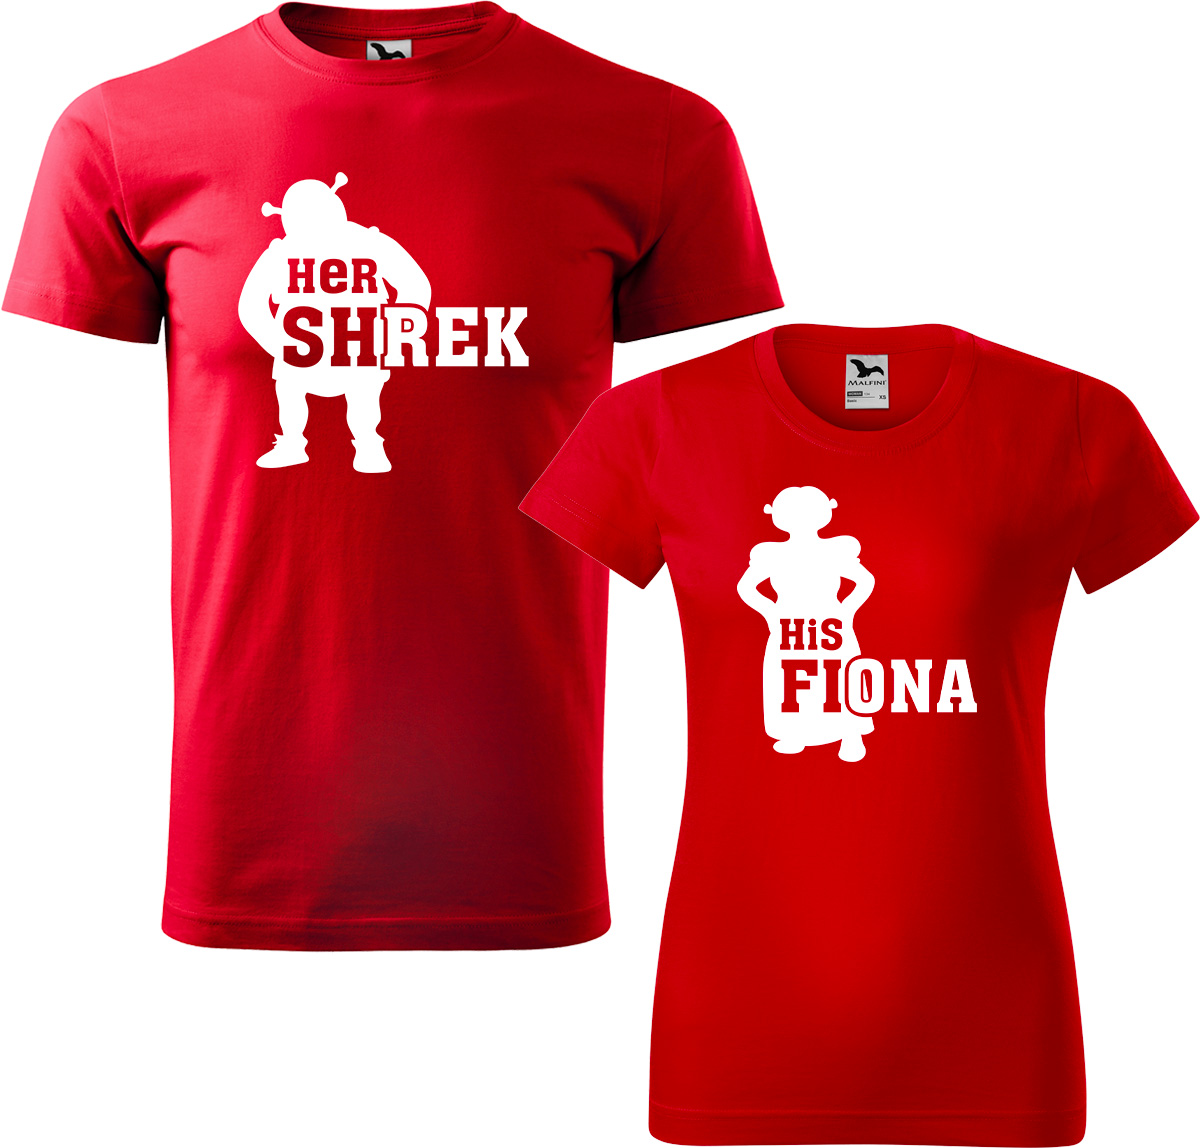 Trička pro páry - Shrek a Fiona Barva: Červená (07), Velikost dámské tričko: S, Velikost pánské tričko: L